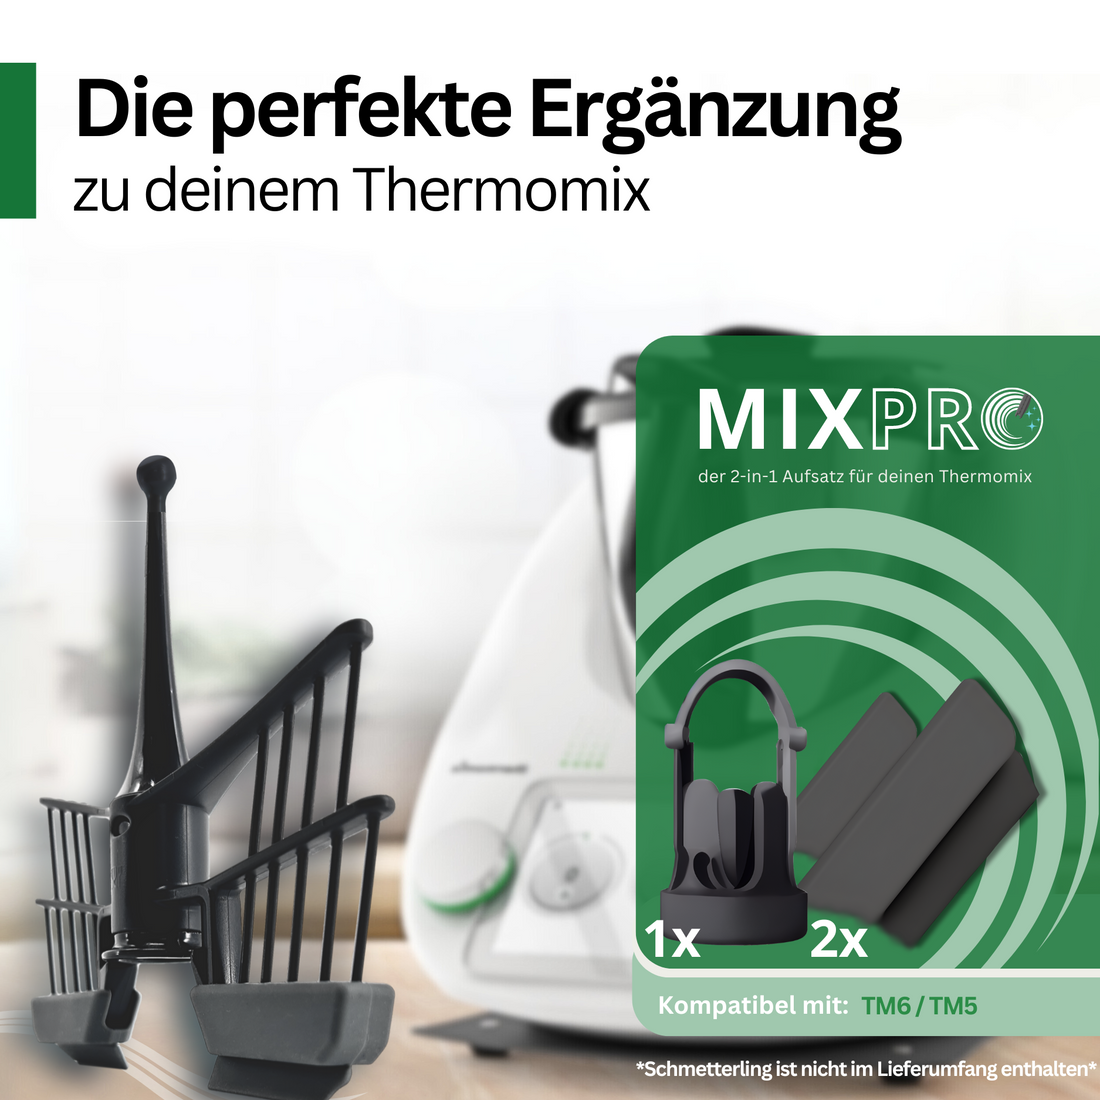 MixPRO – der 2-in-1 Aufsatz passend für den TM5 und TM6